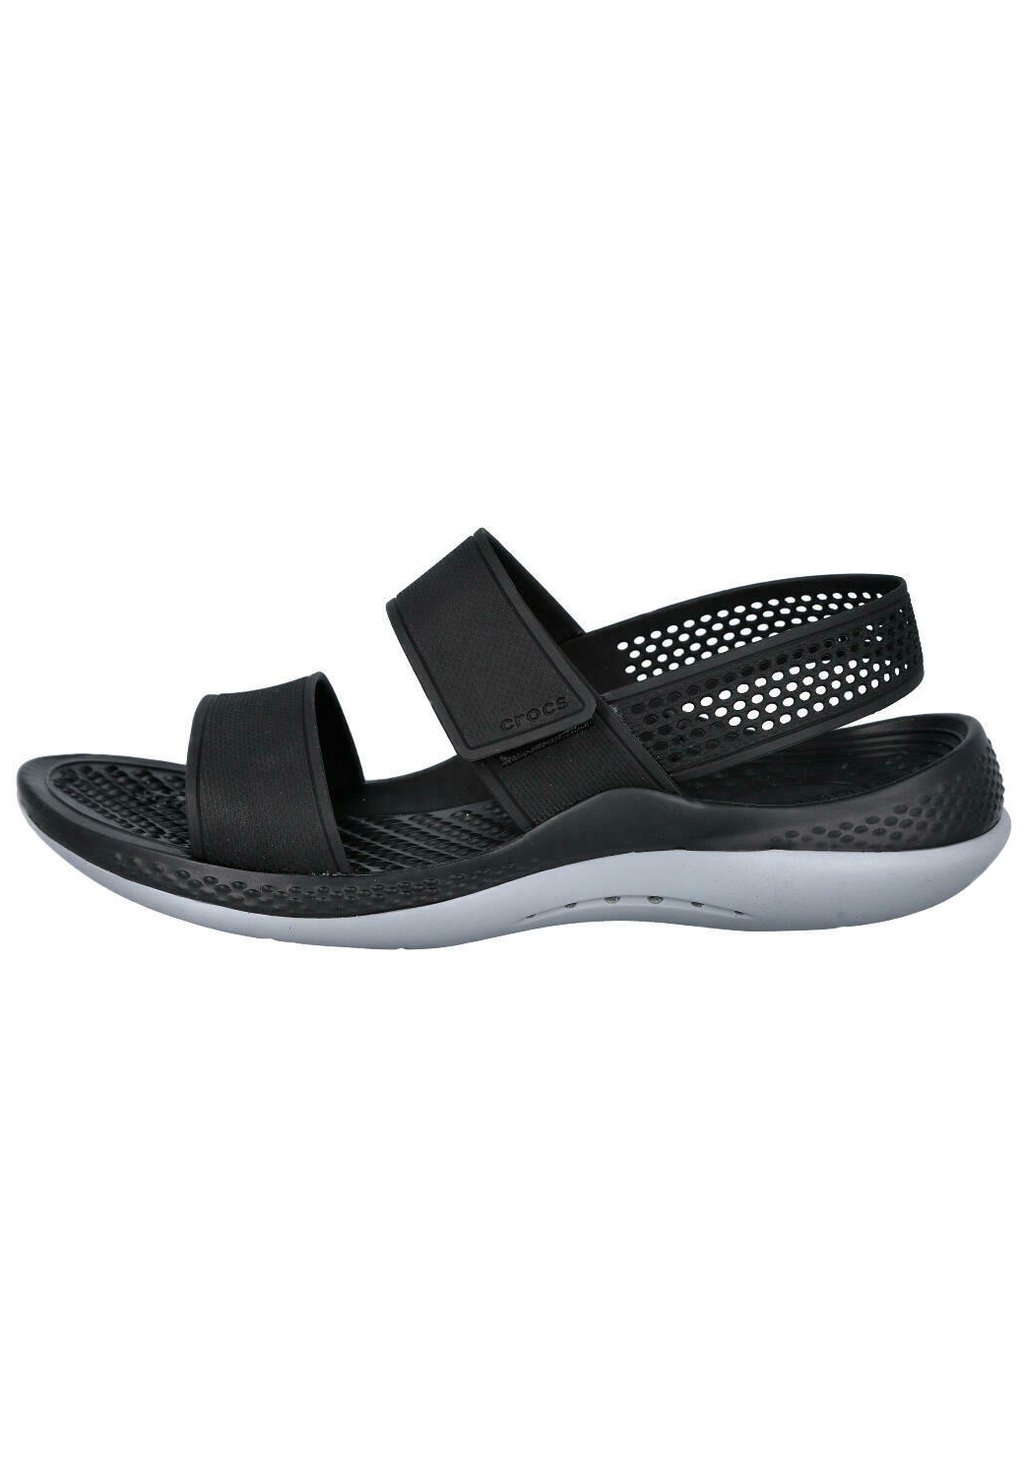 Сандалии LITERIDE Crocs, черный сандалии crocs literide stretch sandal